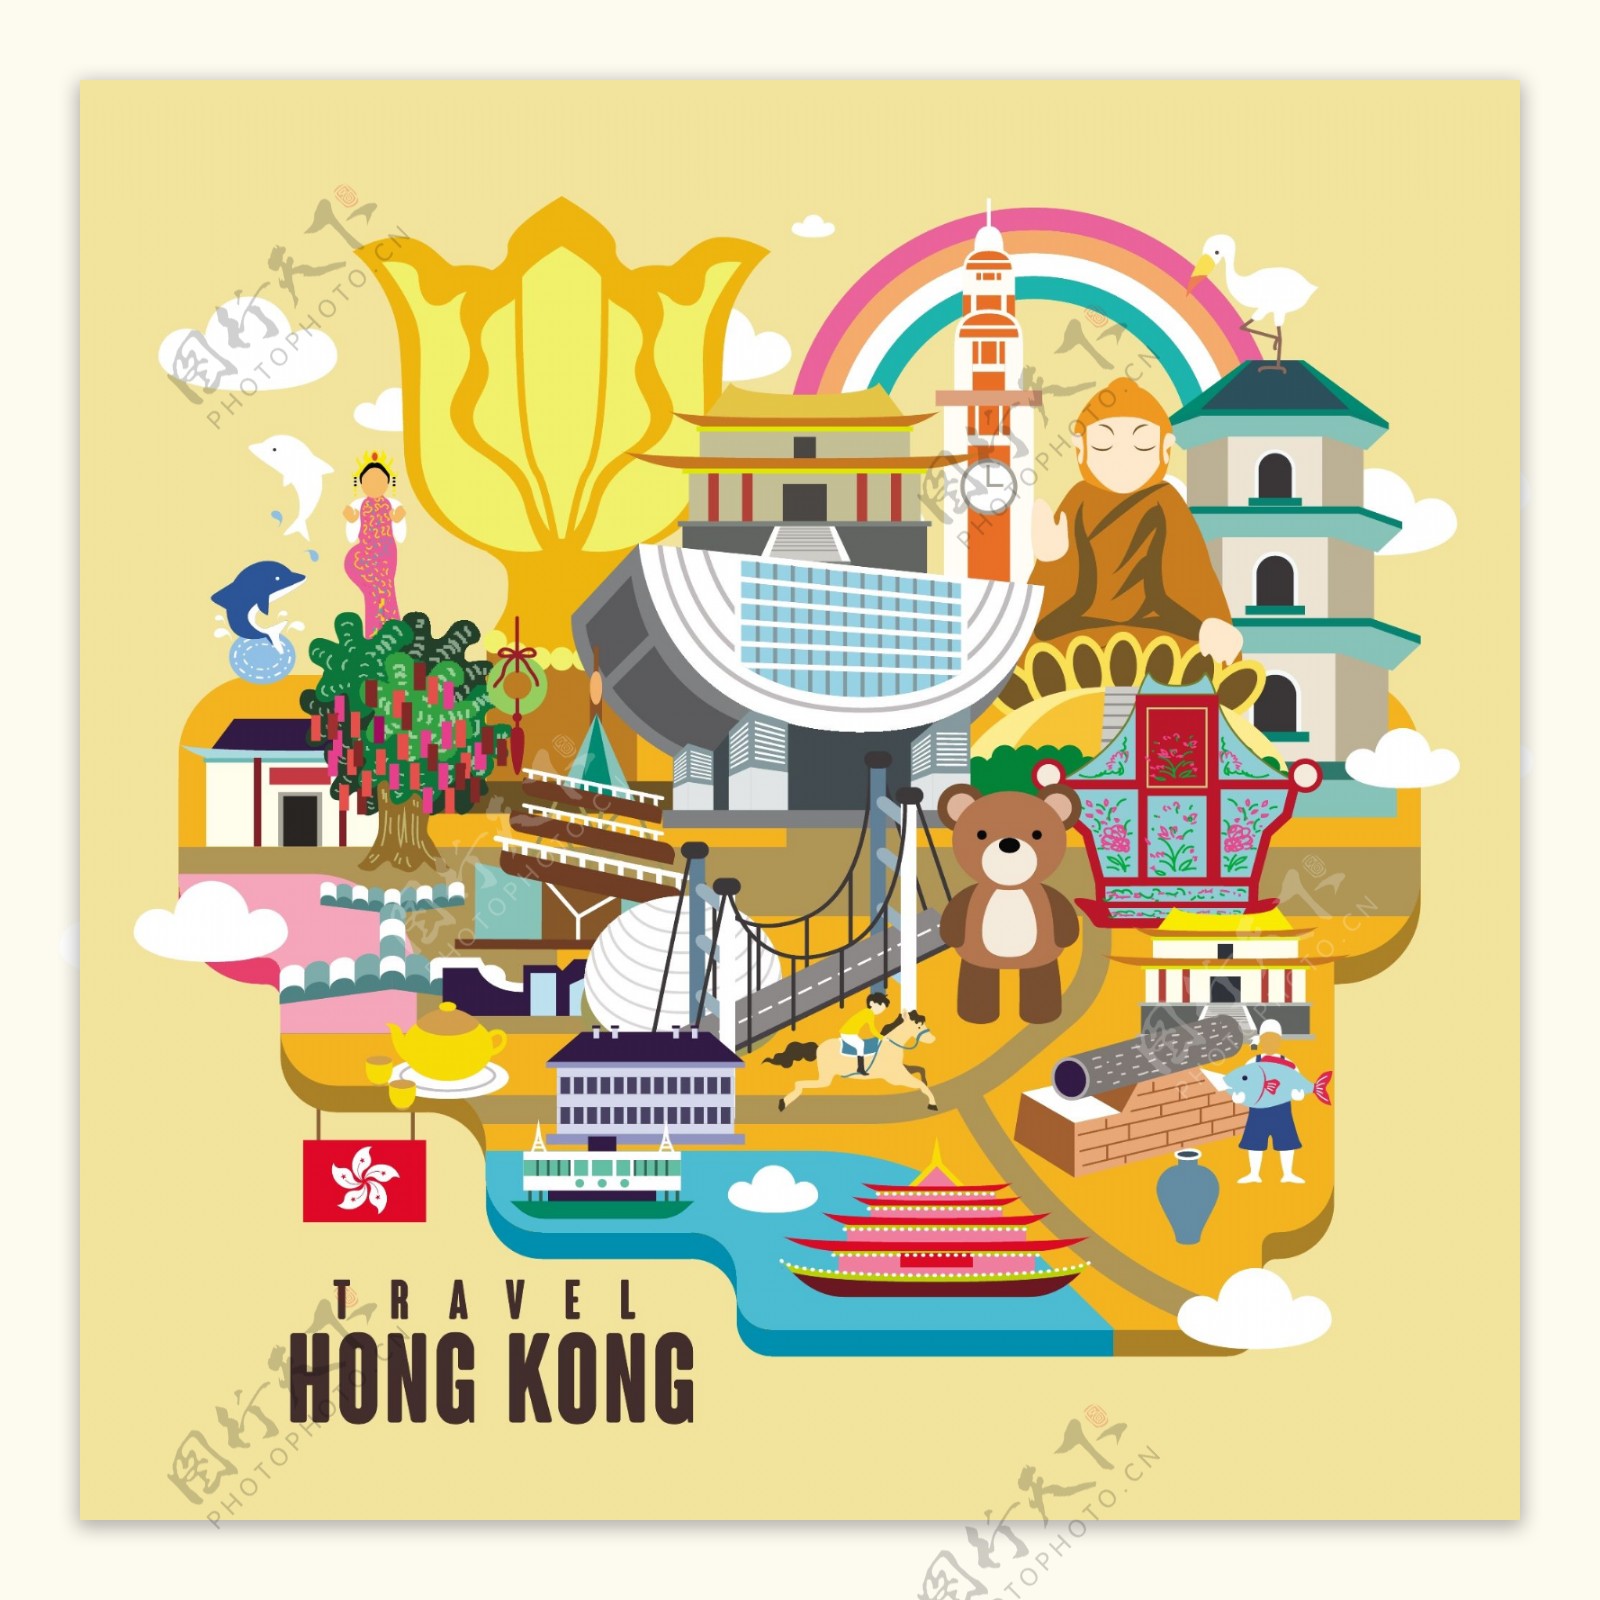 香港旅游文化扁平化矢量素材